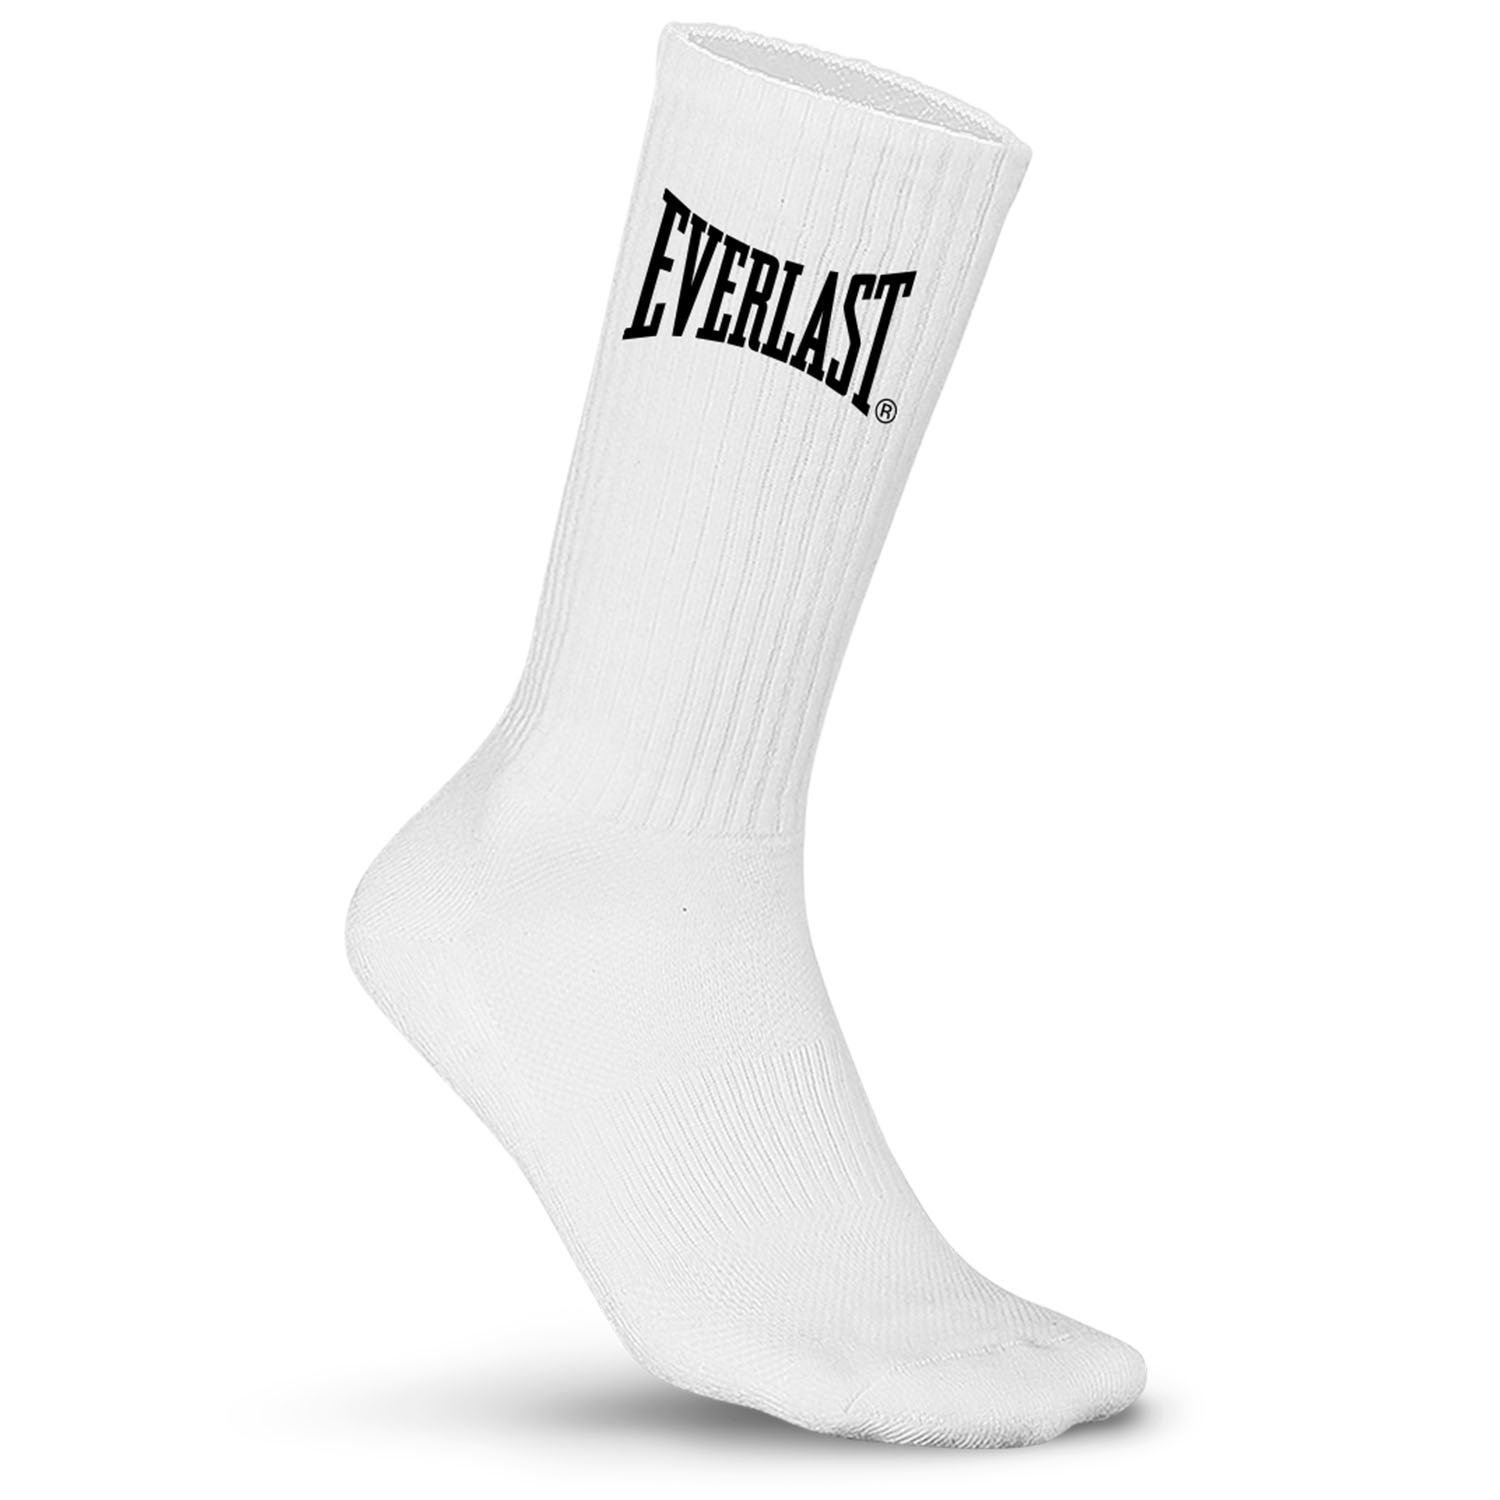 Everlast Socks, 10er Pack, white, 39-42